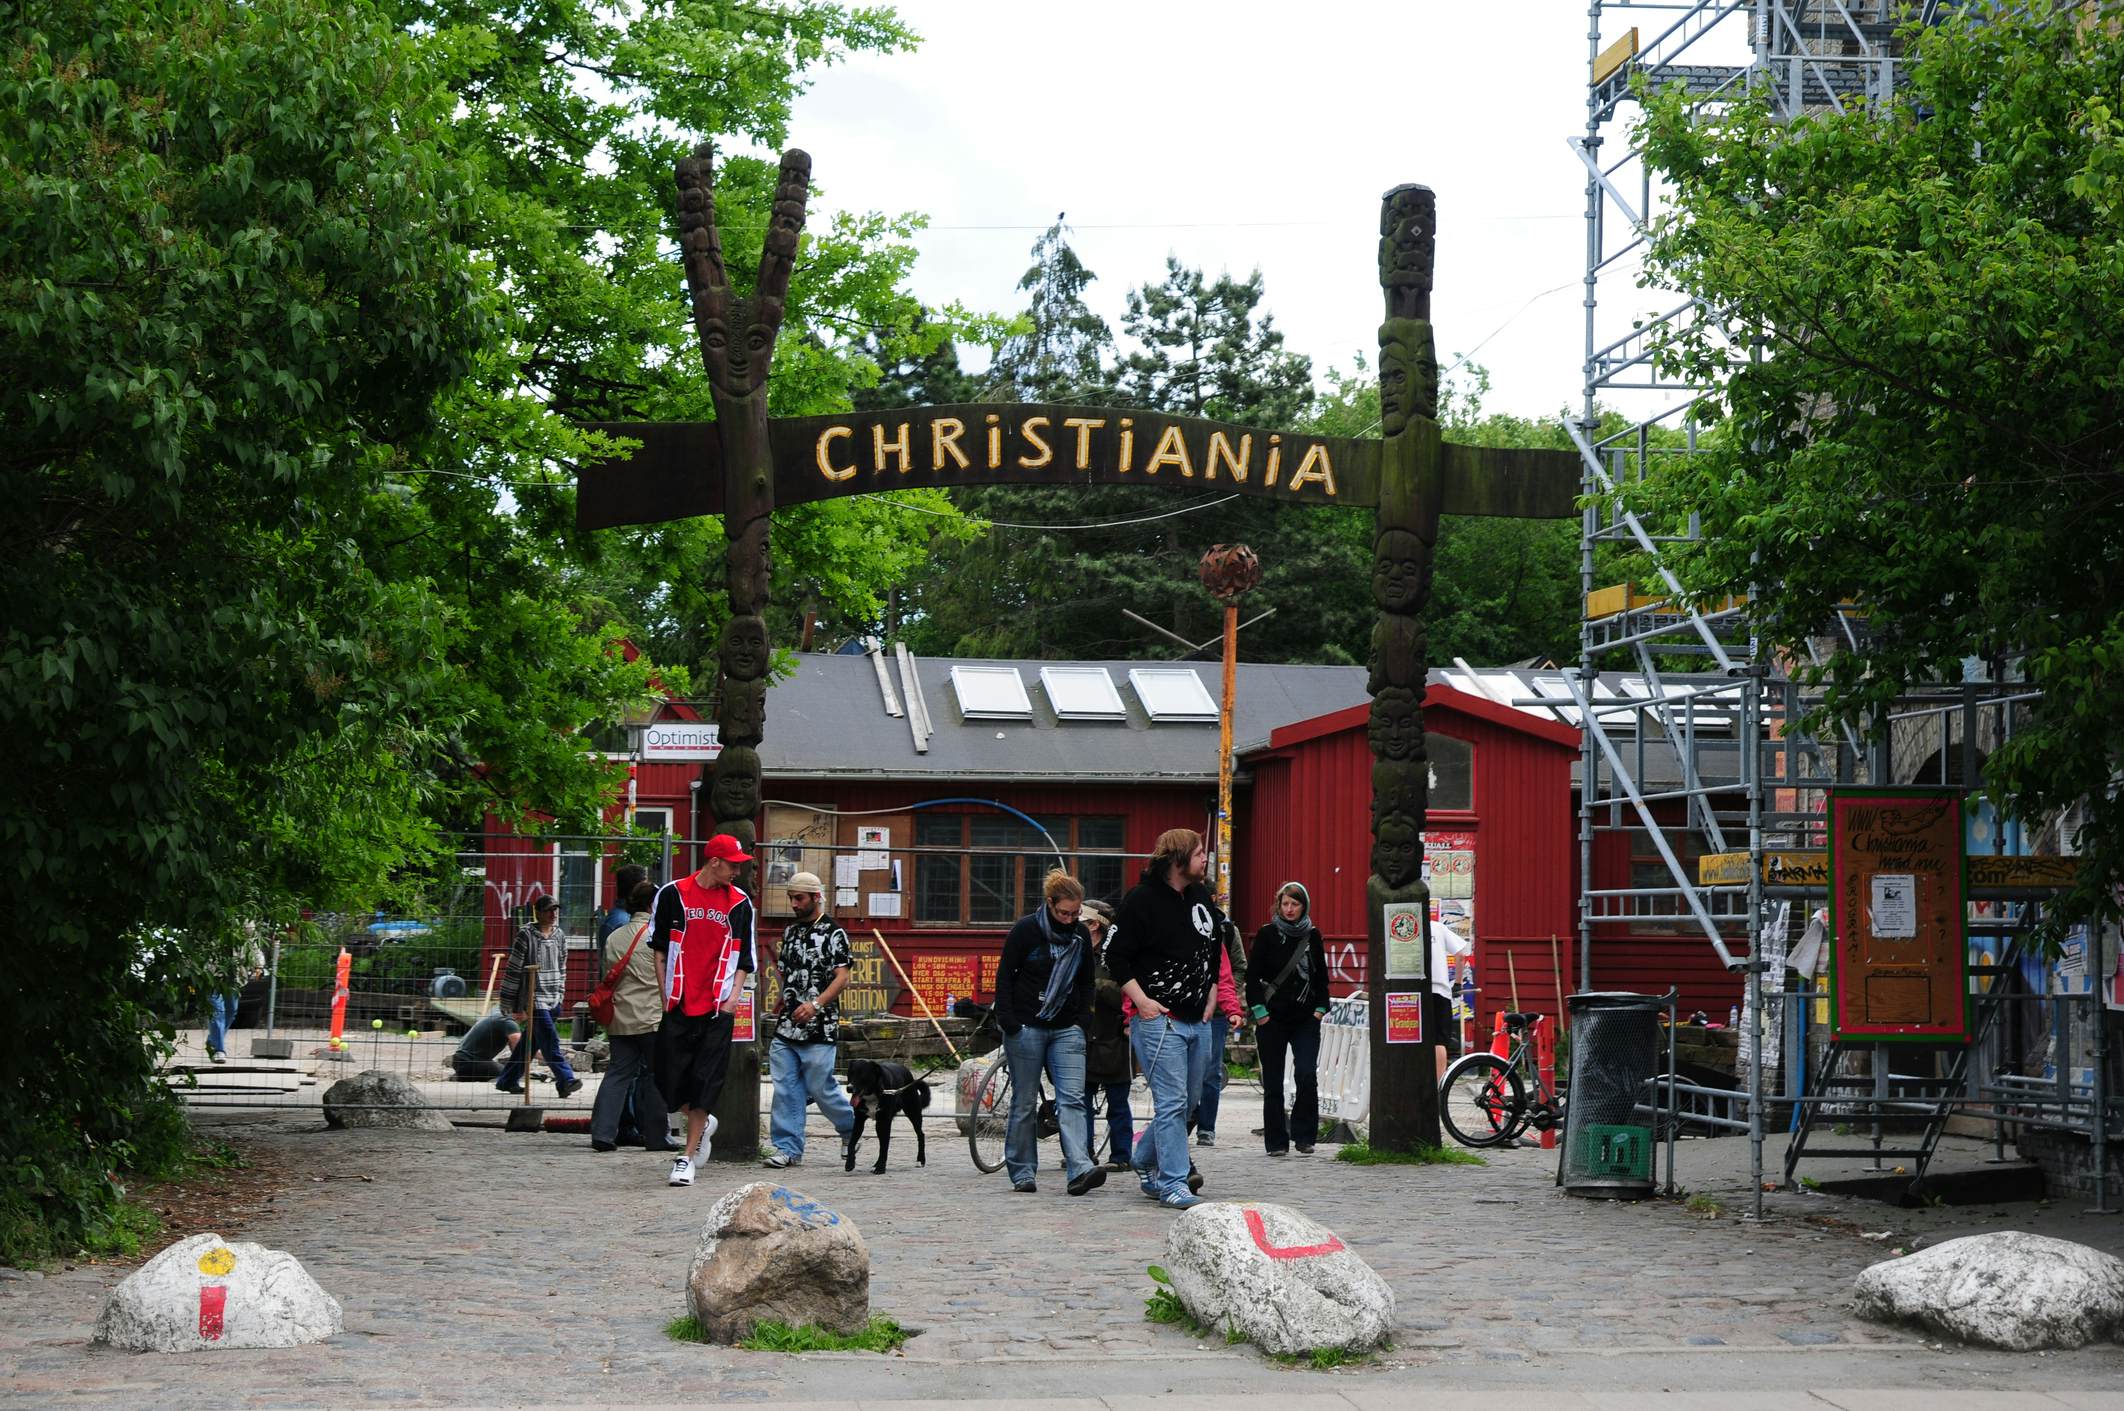 Christiania image